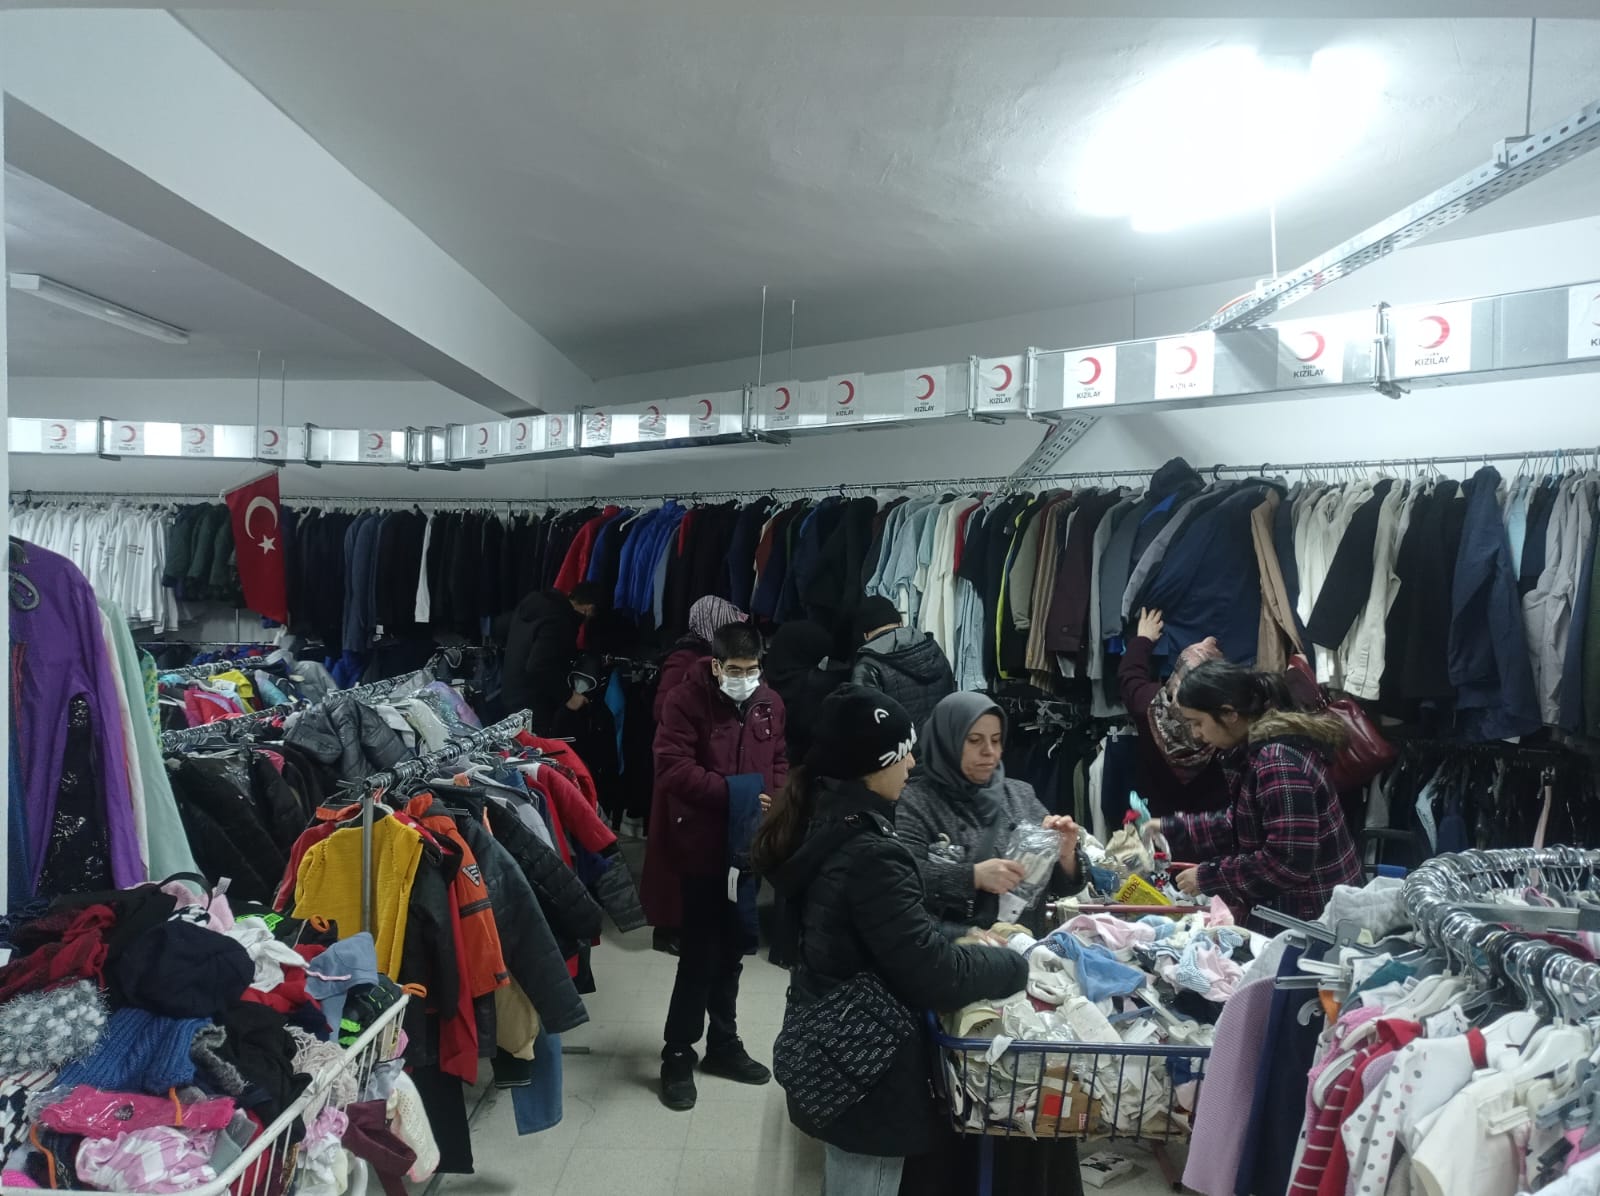 Türk Kızılay Elazığ şubesi olarak ihtiyaç sahiplerimiz için butik mağazamızda kıyafet dağıtımlarımıza devam ediyoruz🌙 (3)